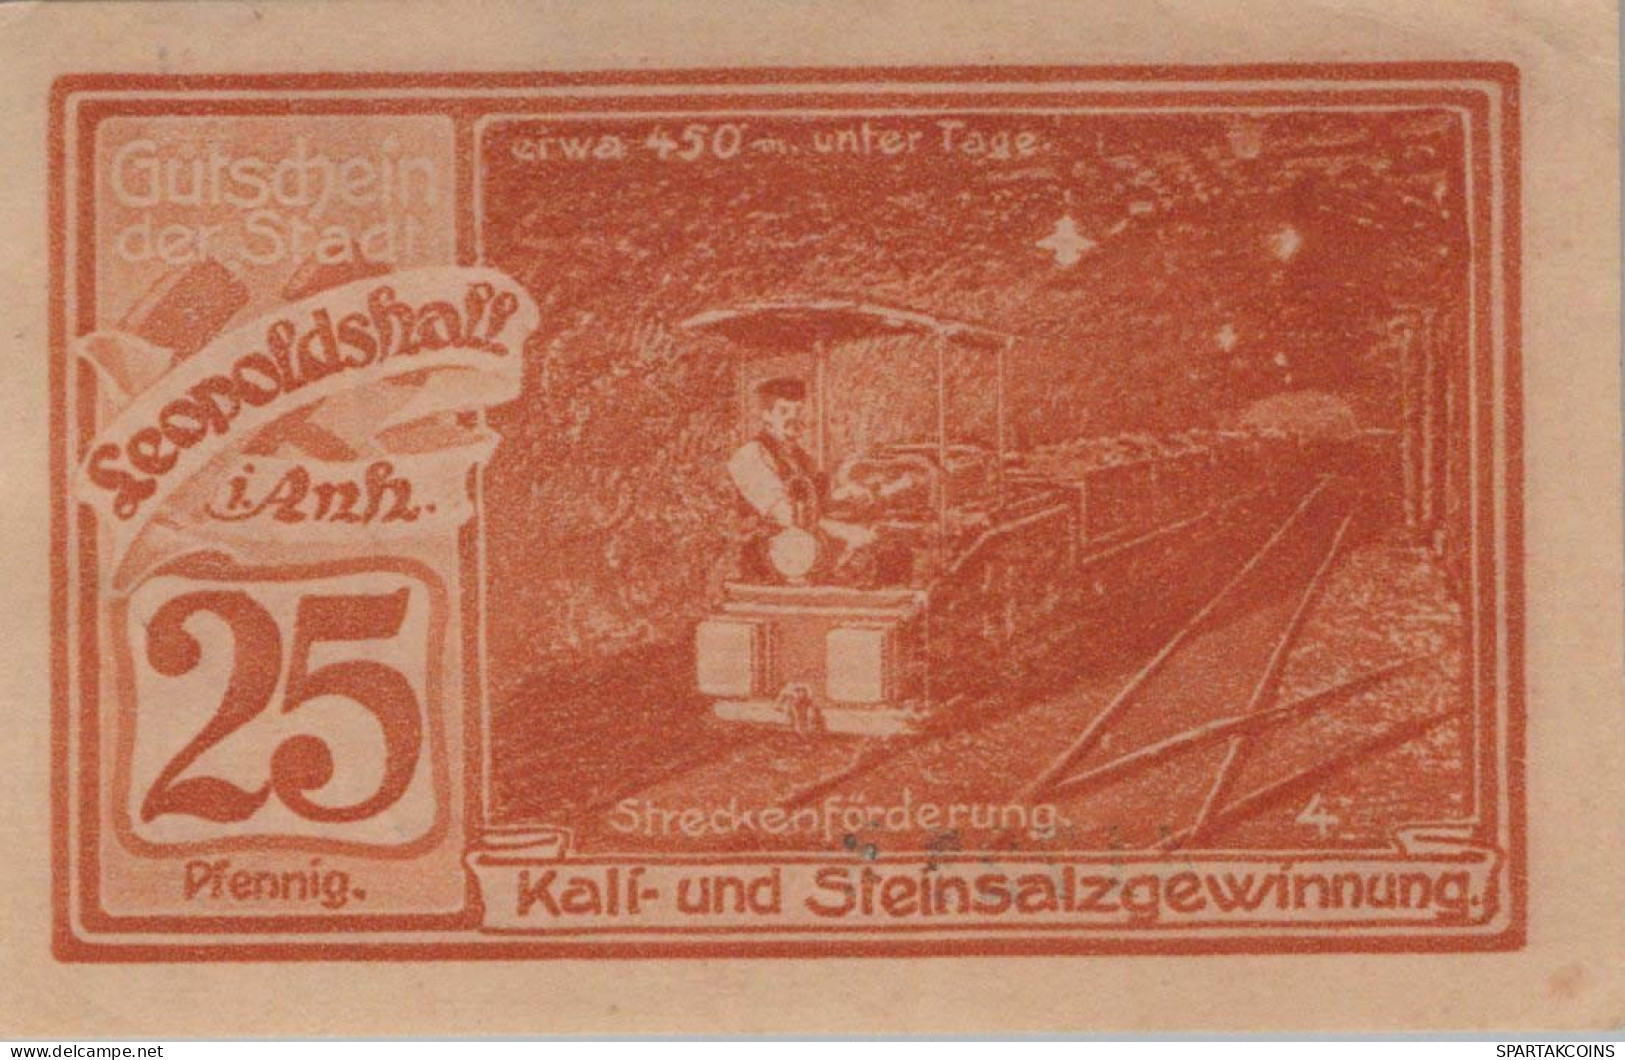 25 PFENNIG 1921 Stadt LEOPOLDSHALL Anhalt UNC DEUTSCHLAND Notgeld #PC172 - [11] Emisiones Locales